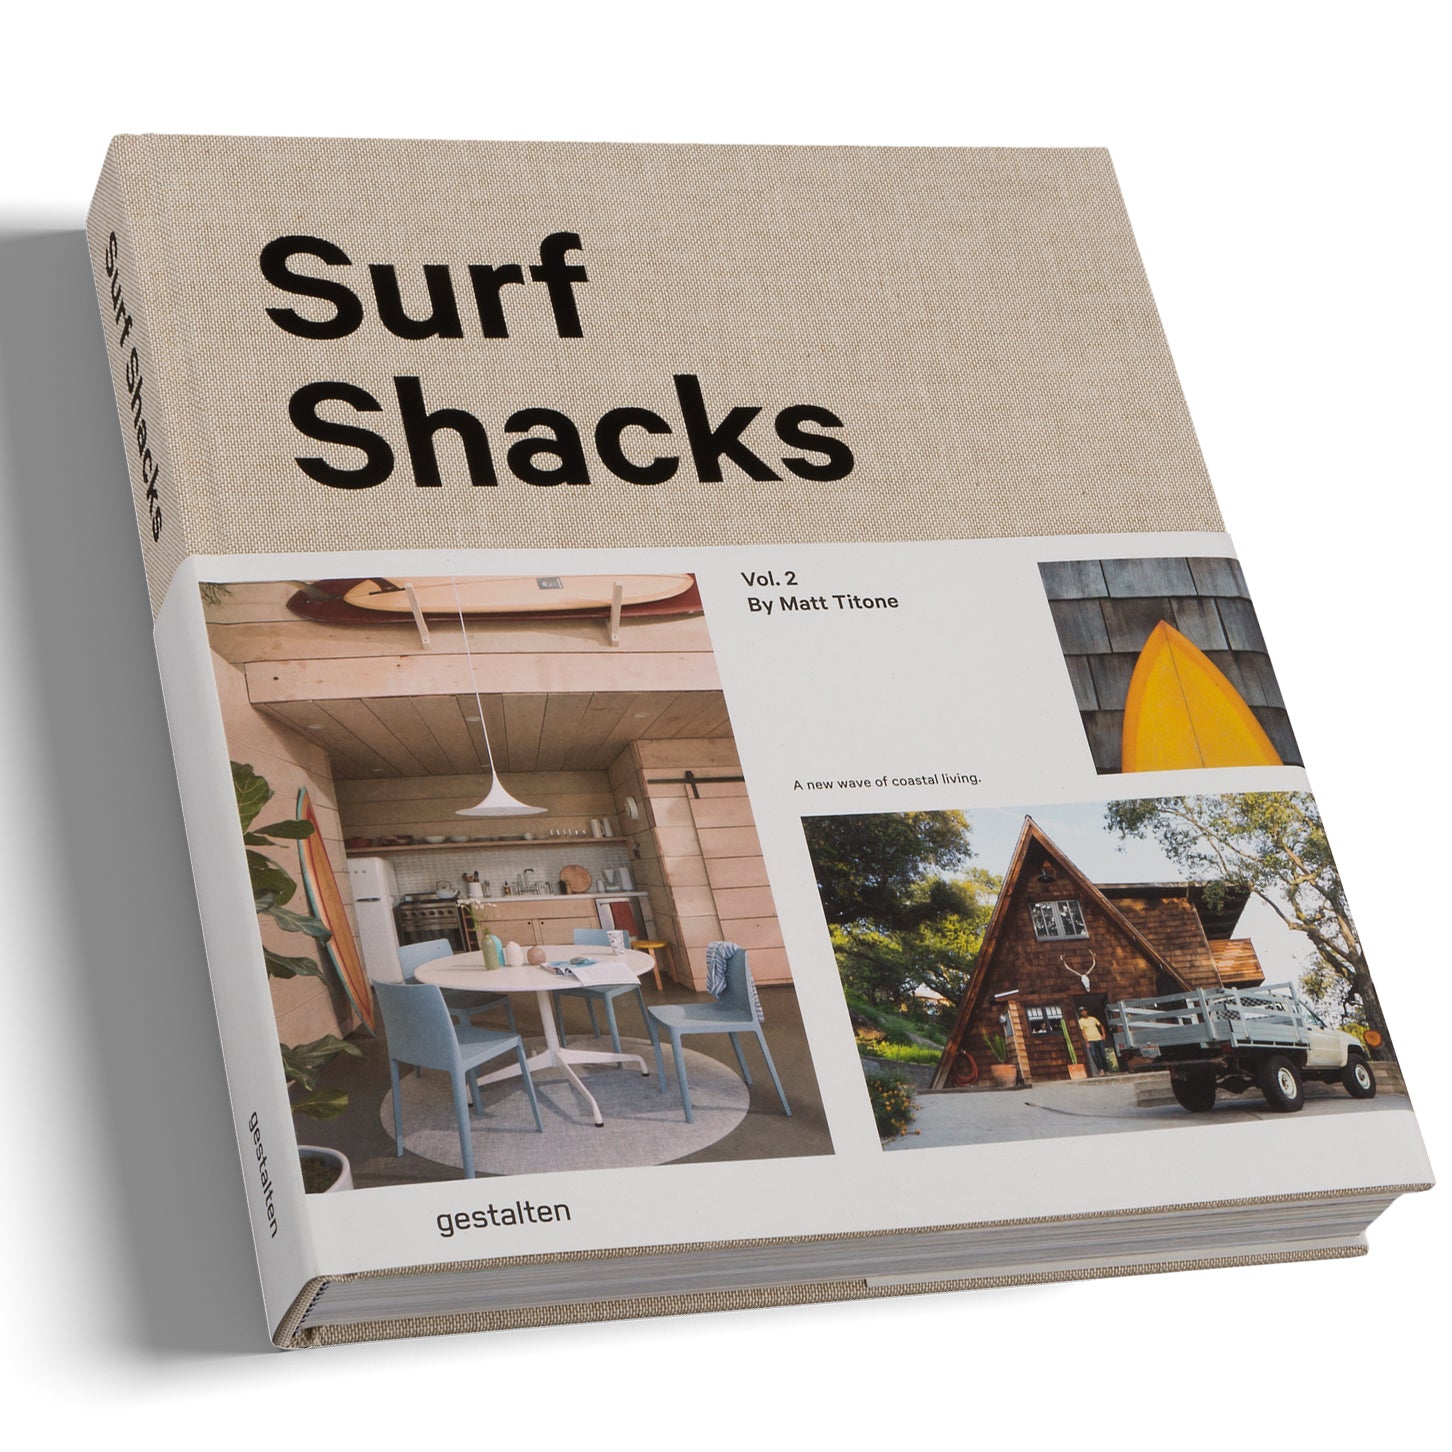 Surf Shacks vol 2 - A New Wave og Coastal Living